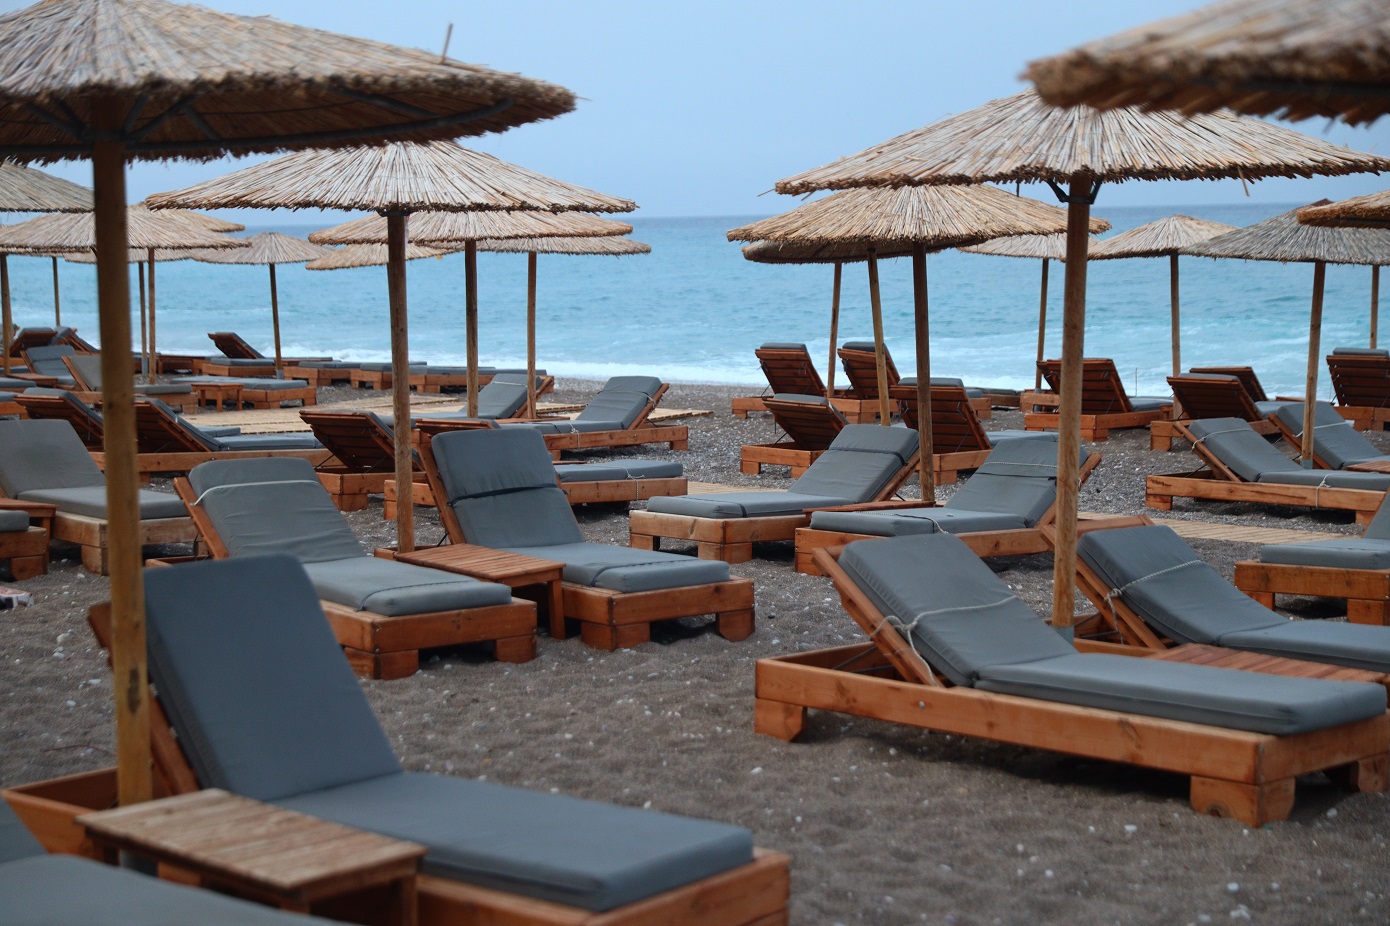 «Γέμισε την παραλία με ξύλινες κατασκευές» Παραβίαση του αιγιαλού στο Μεσολόγγι από κατάστημα, είχαν καταληφθεί χώροι αυθαίρετα